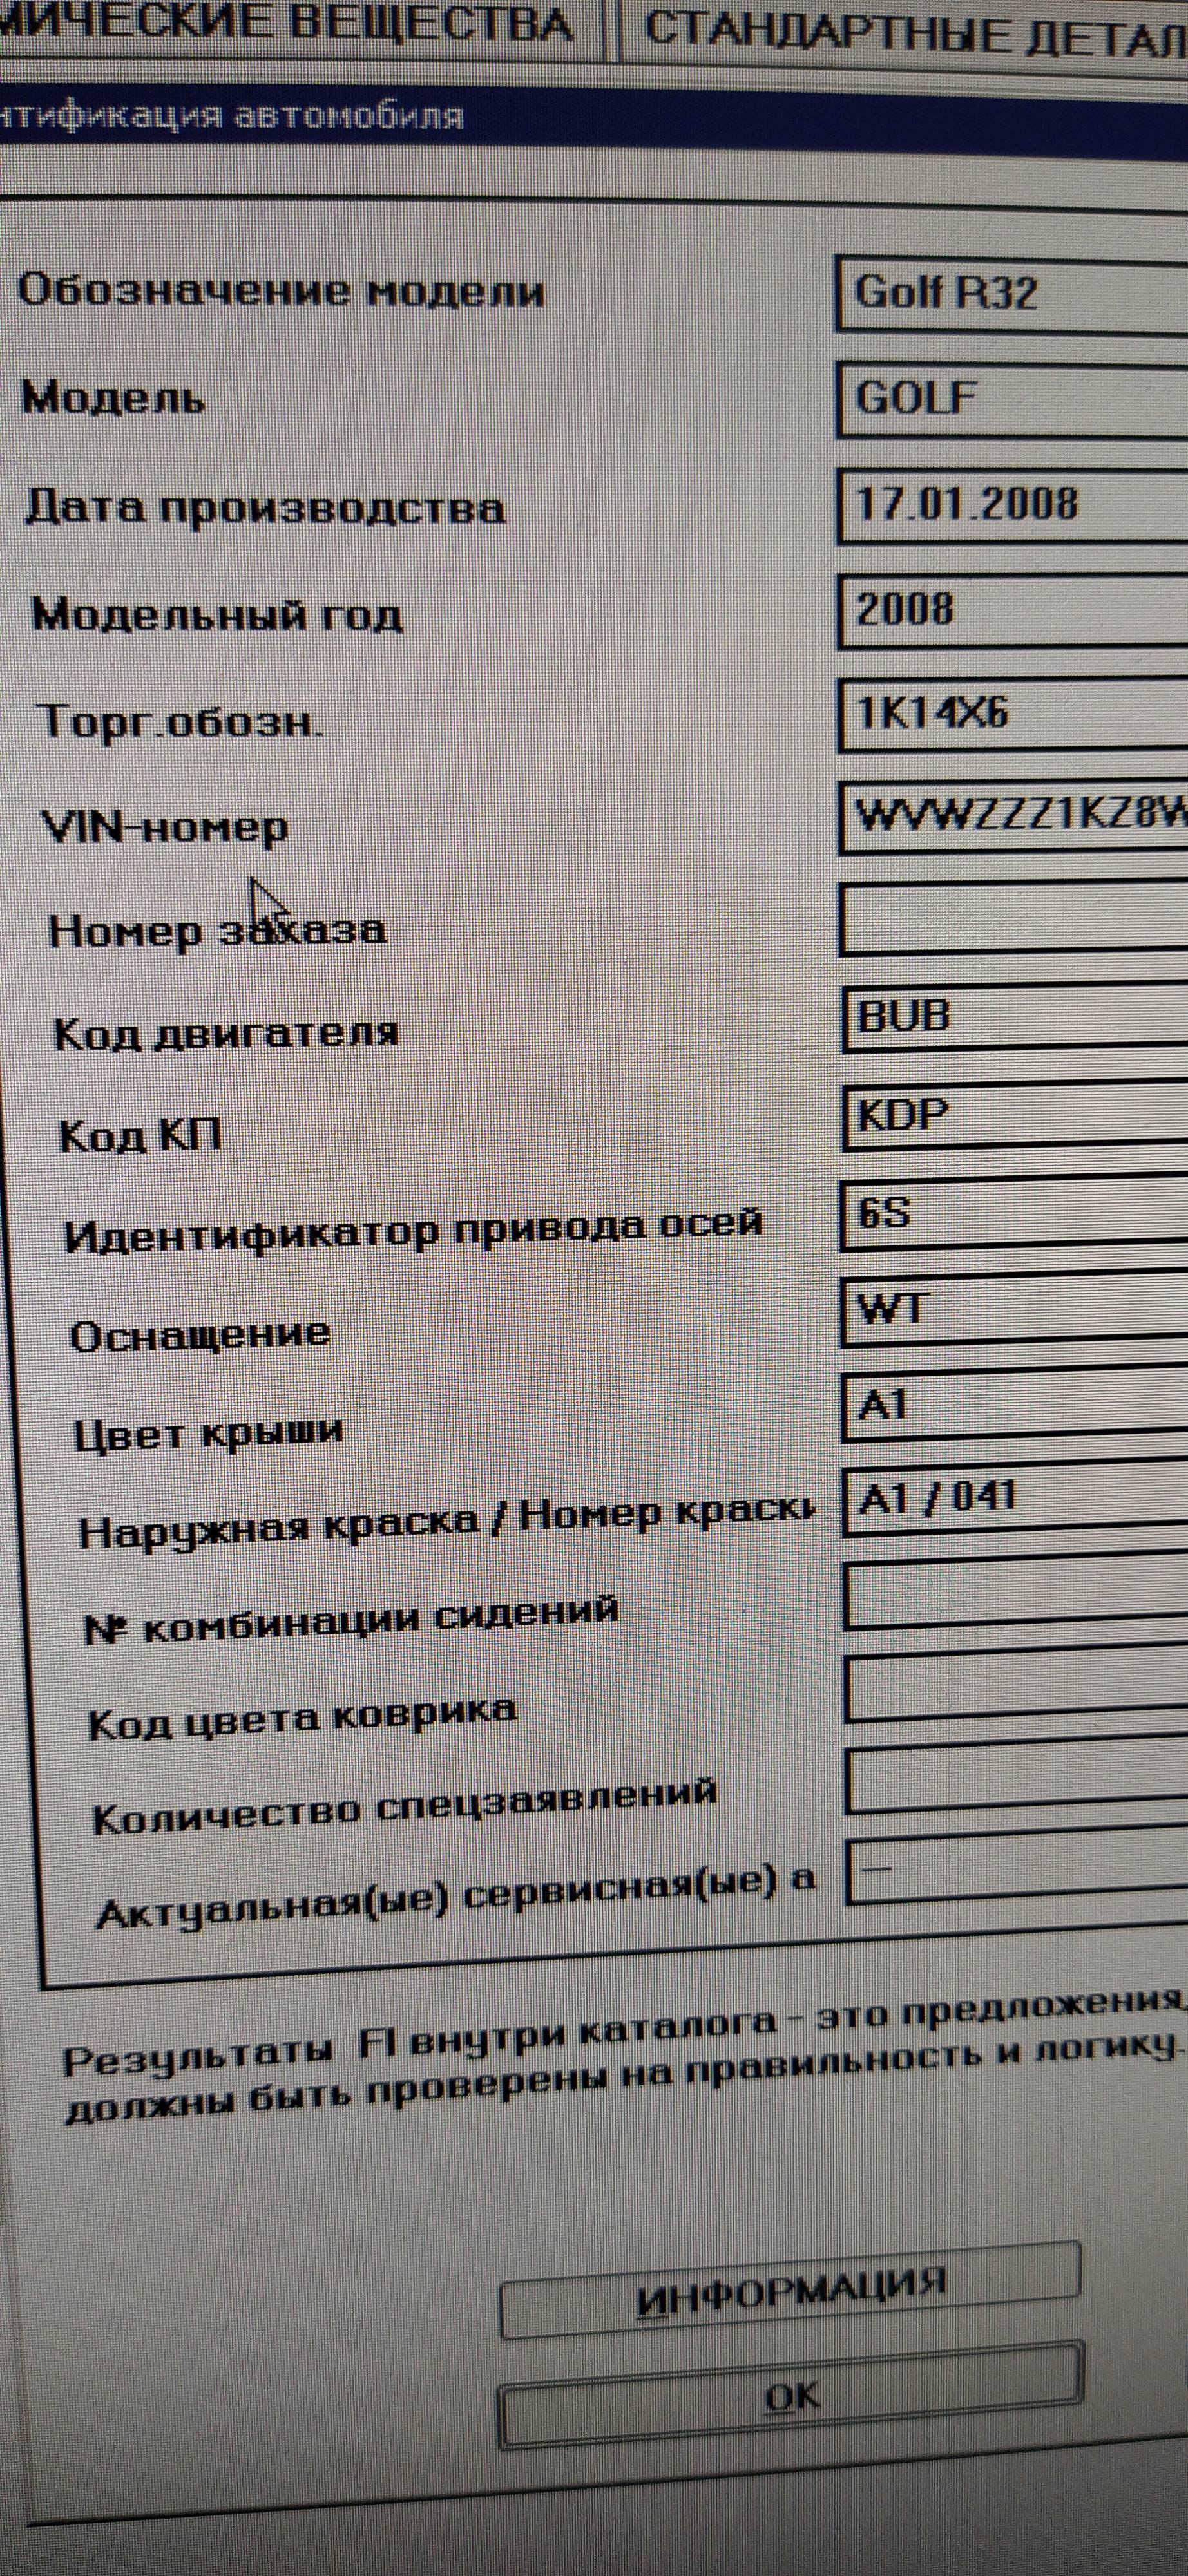 02Q_KDP Novozhilov 23052020 (1)